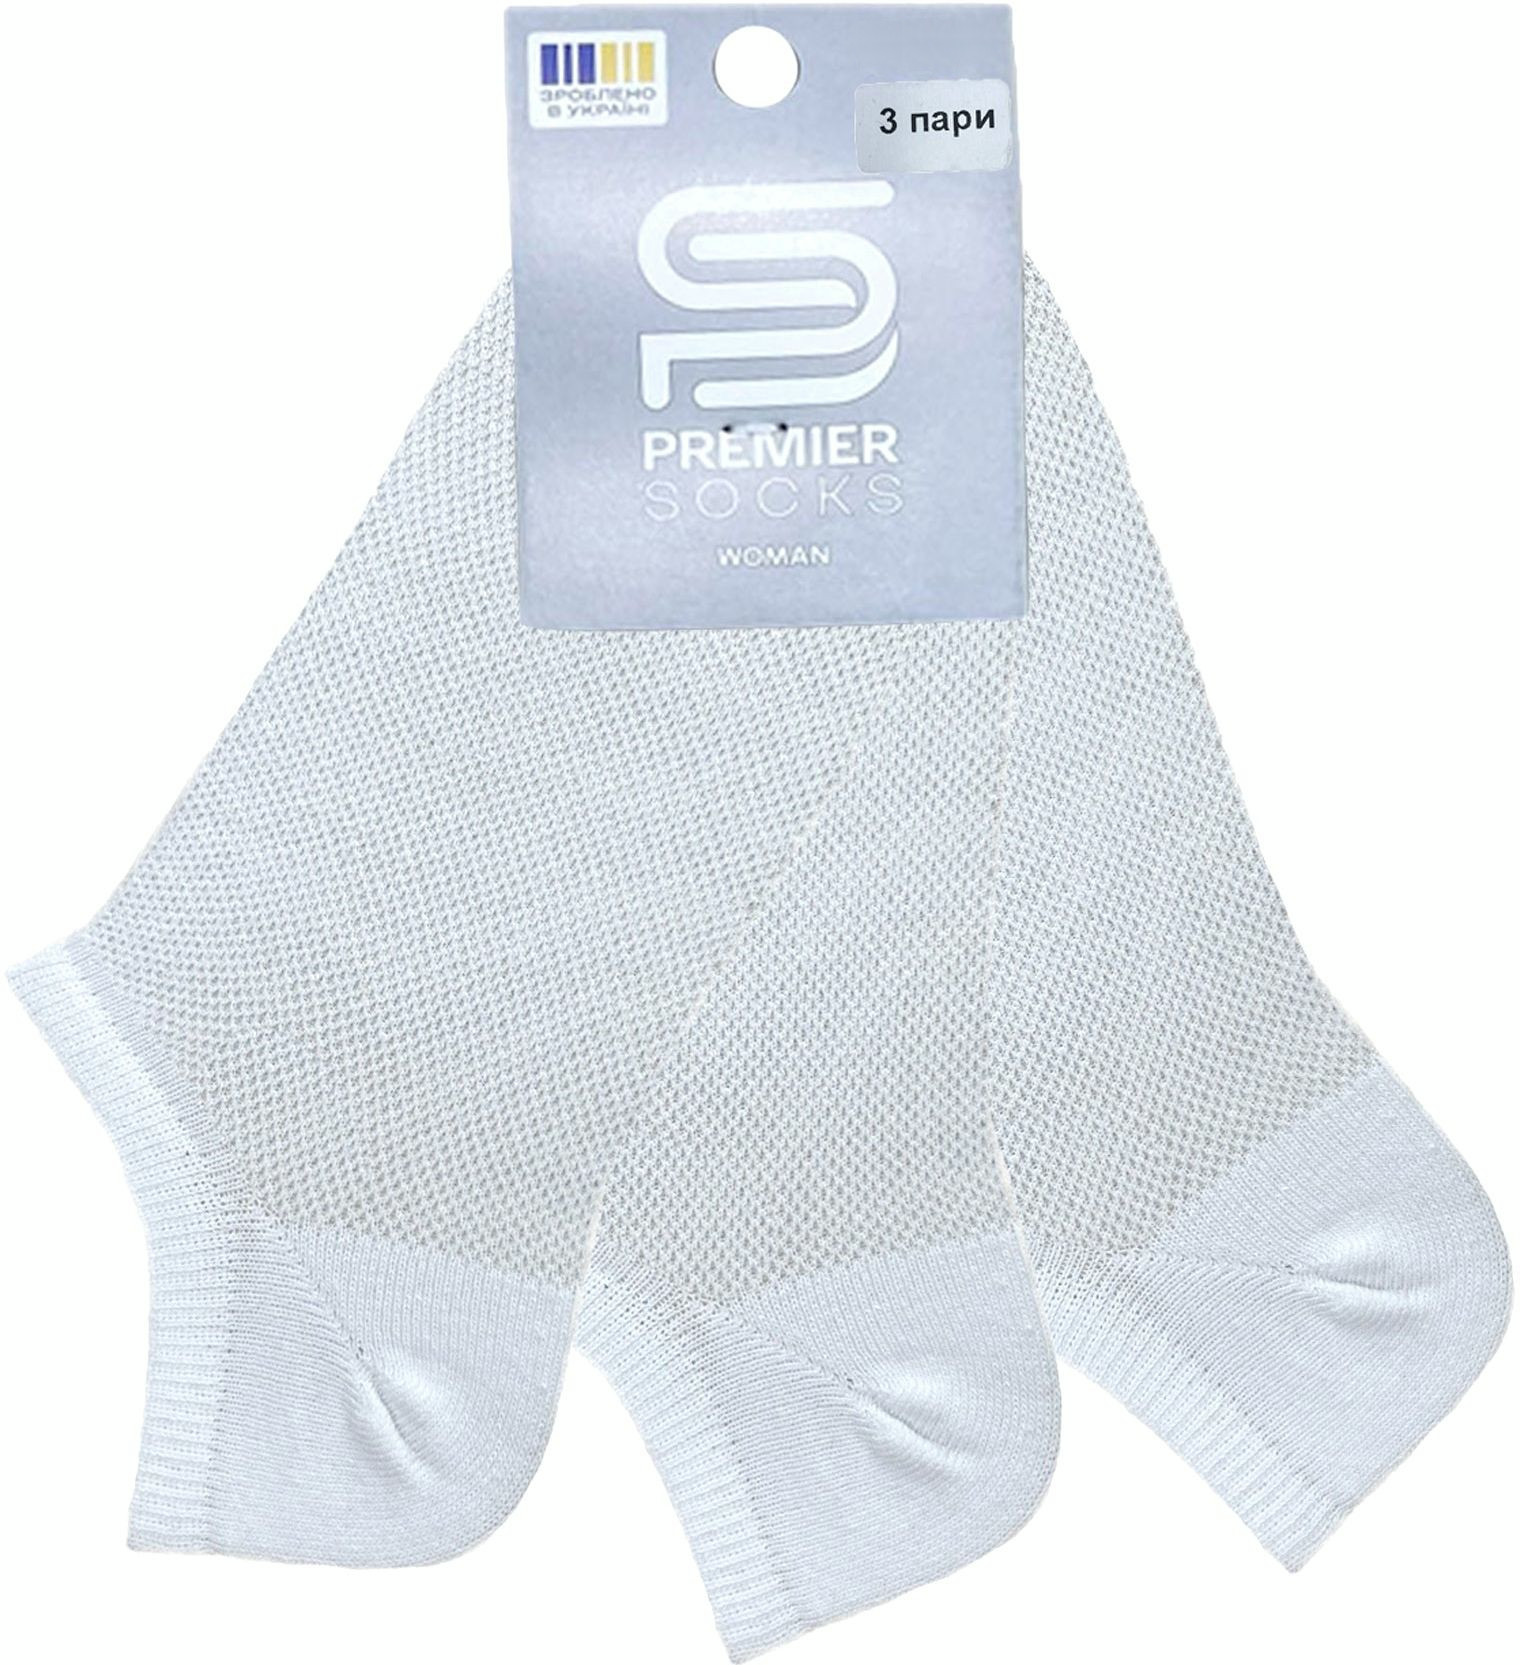 Набор носков женские Premier Socks 36-40 3 пары белые (4820163319391) фото 3